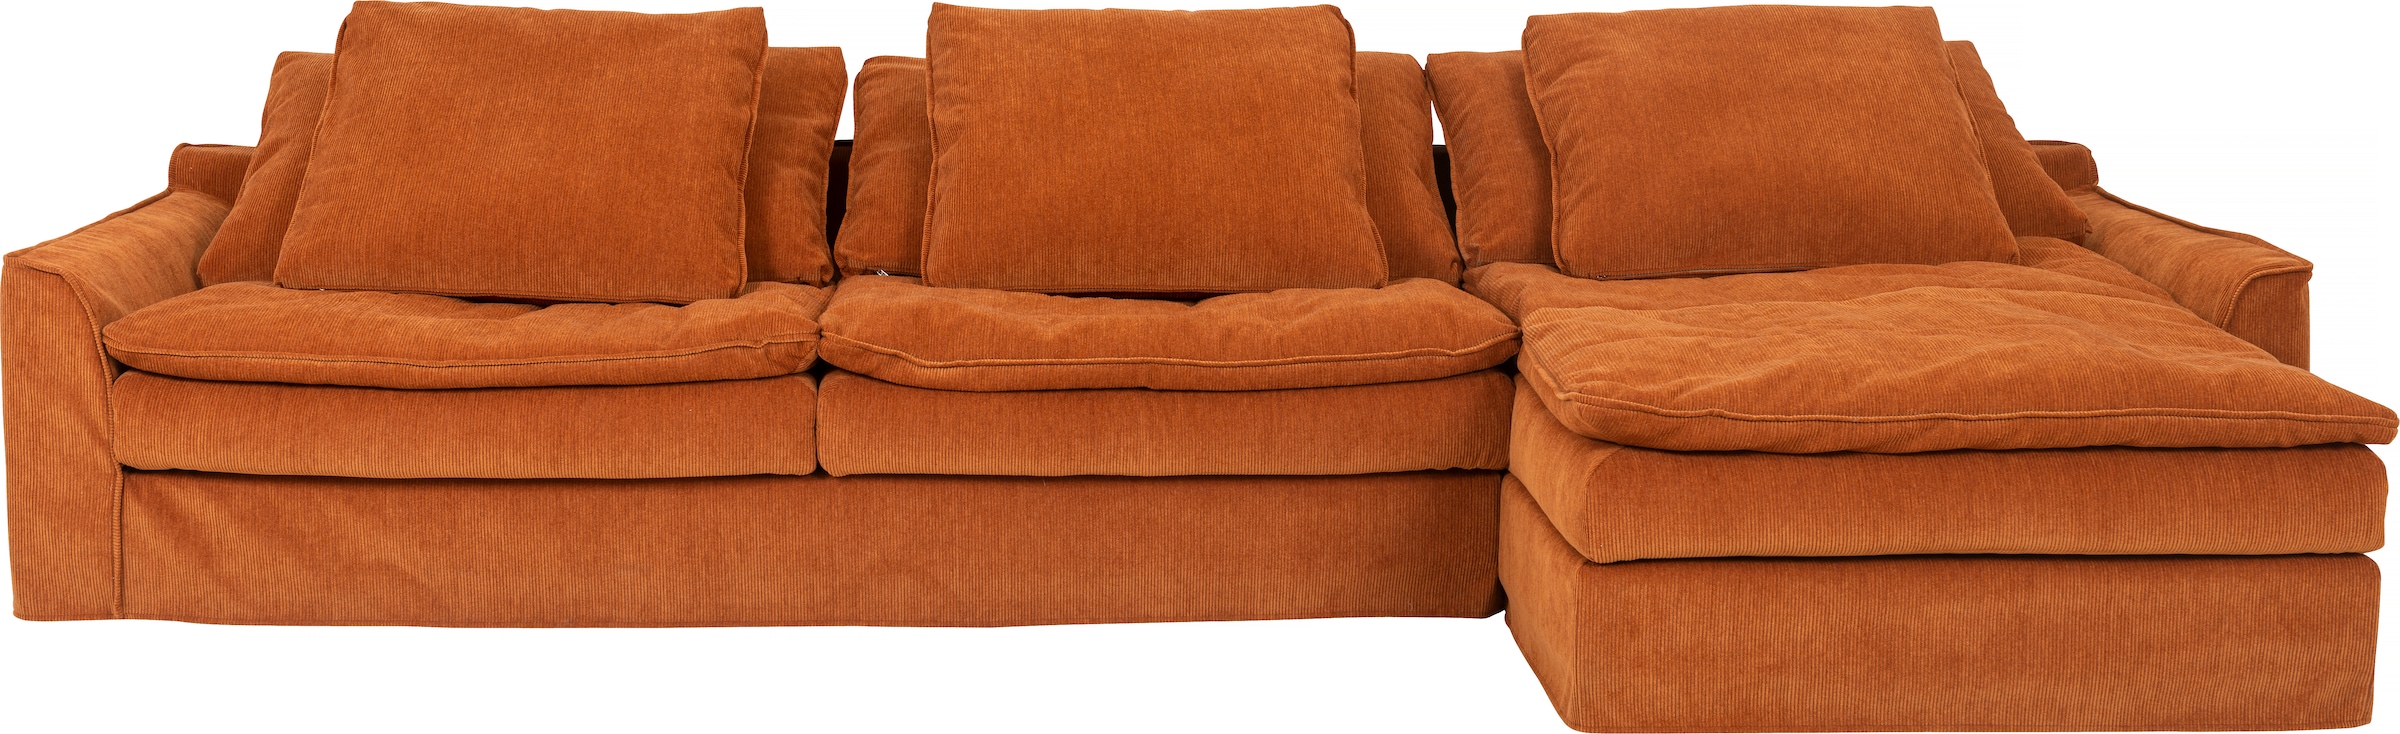 furninova Didelė sofa »Sake« su 6 pagalvė nuimam...